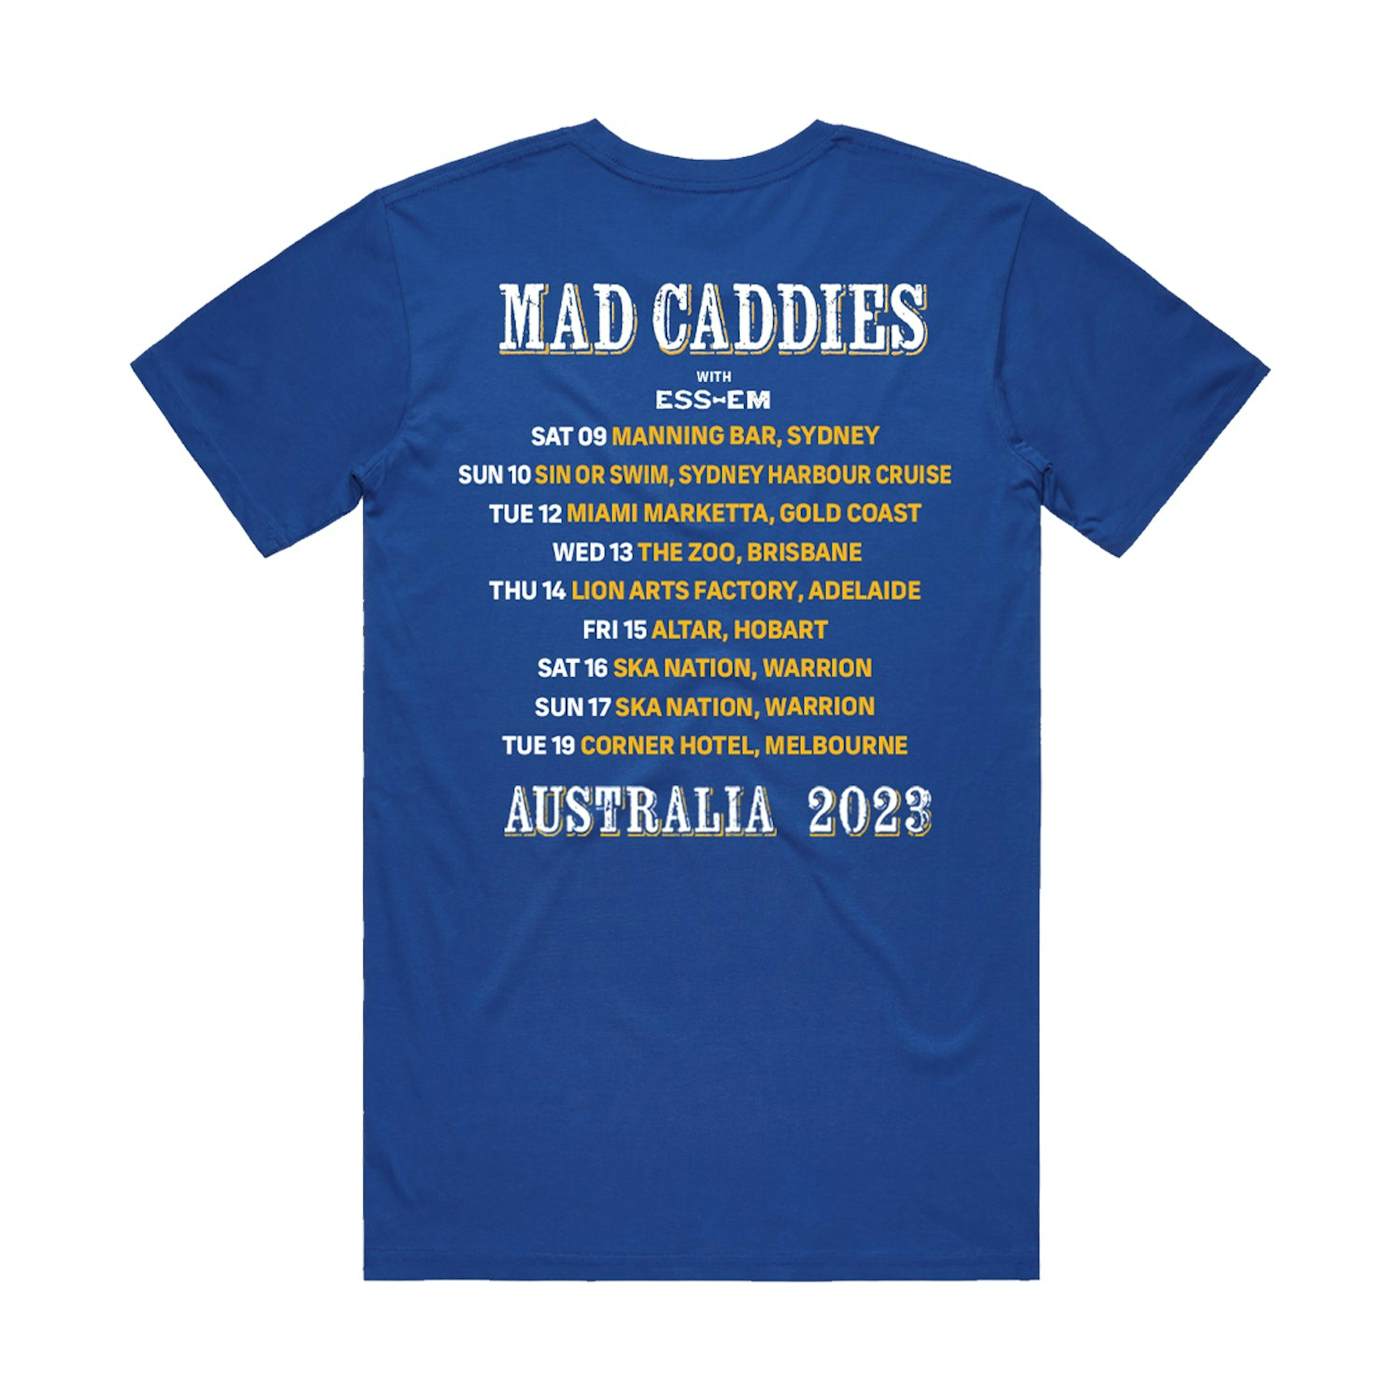 Mad Caddies 2023 Tour Tee (Royal Blue)